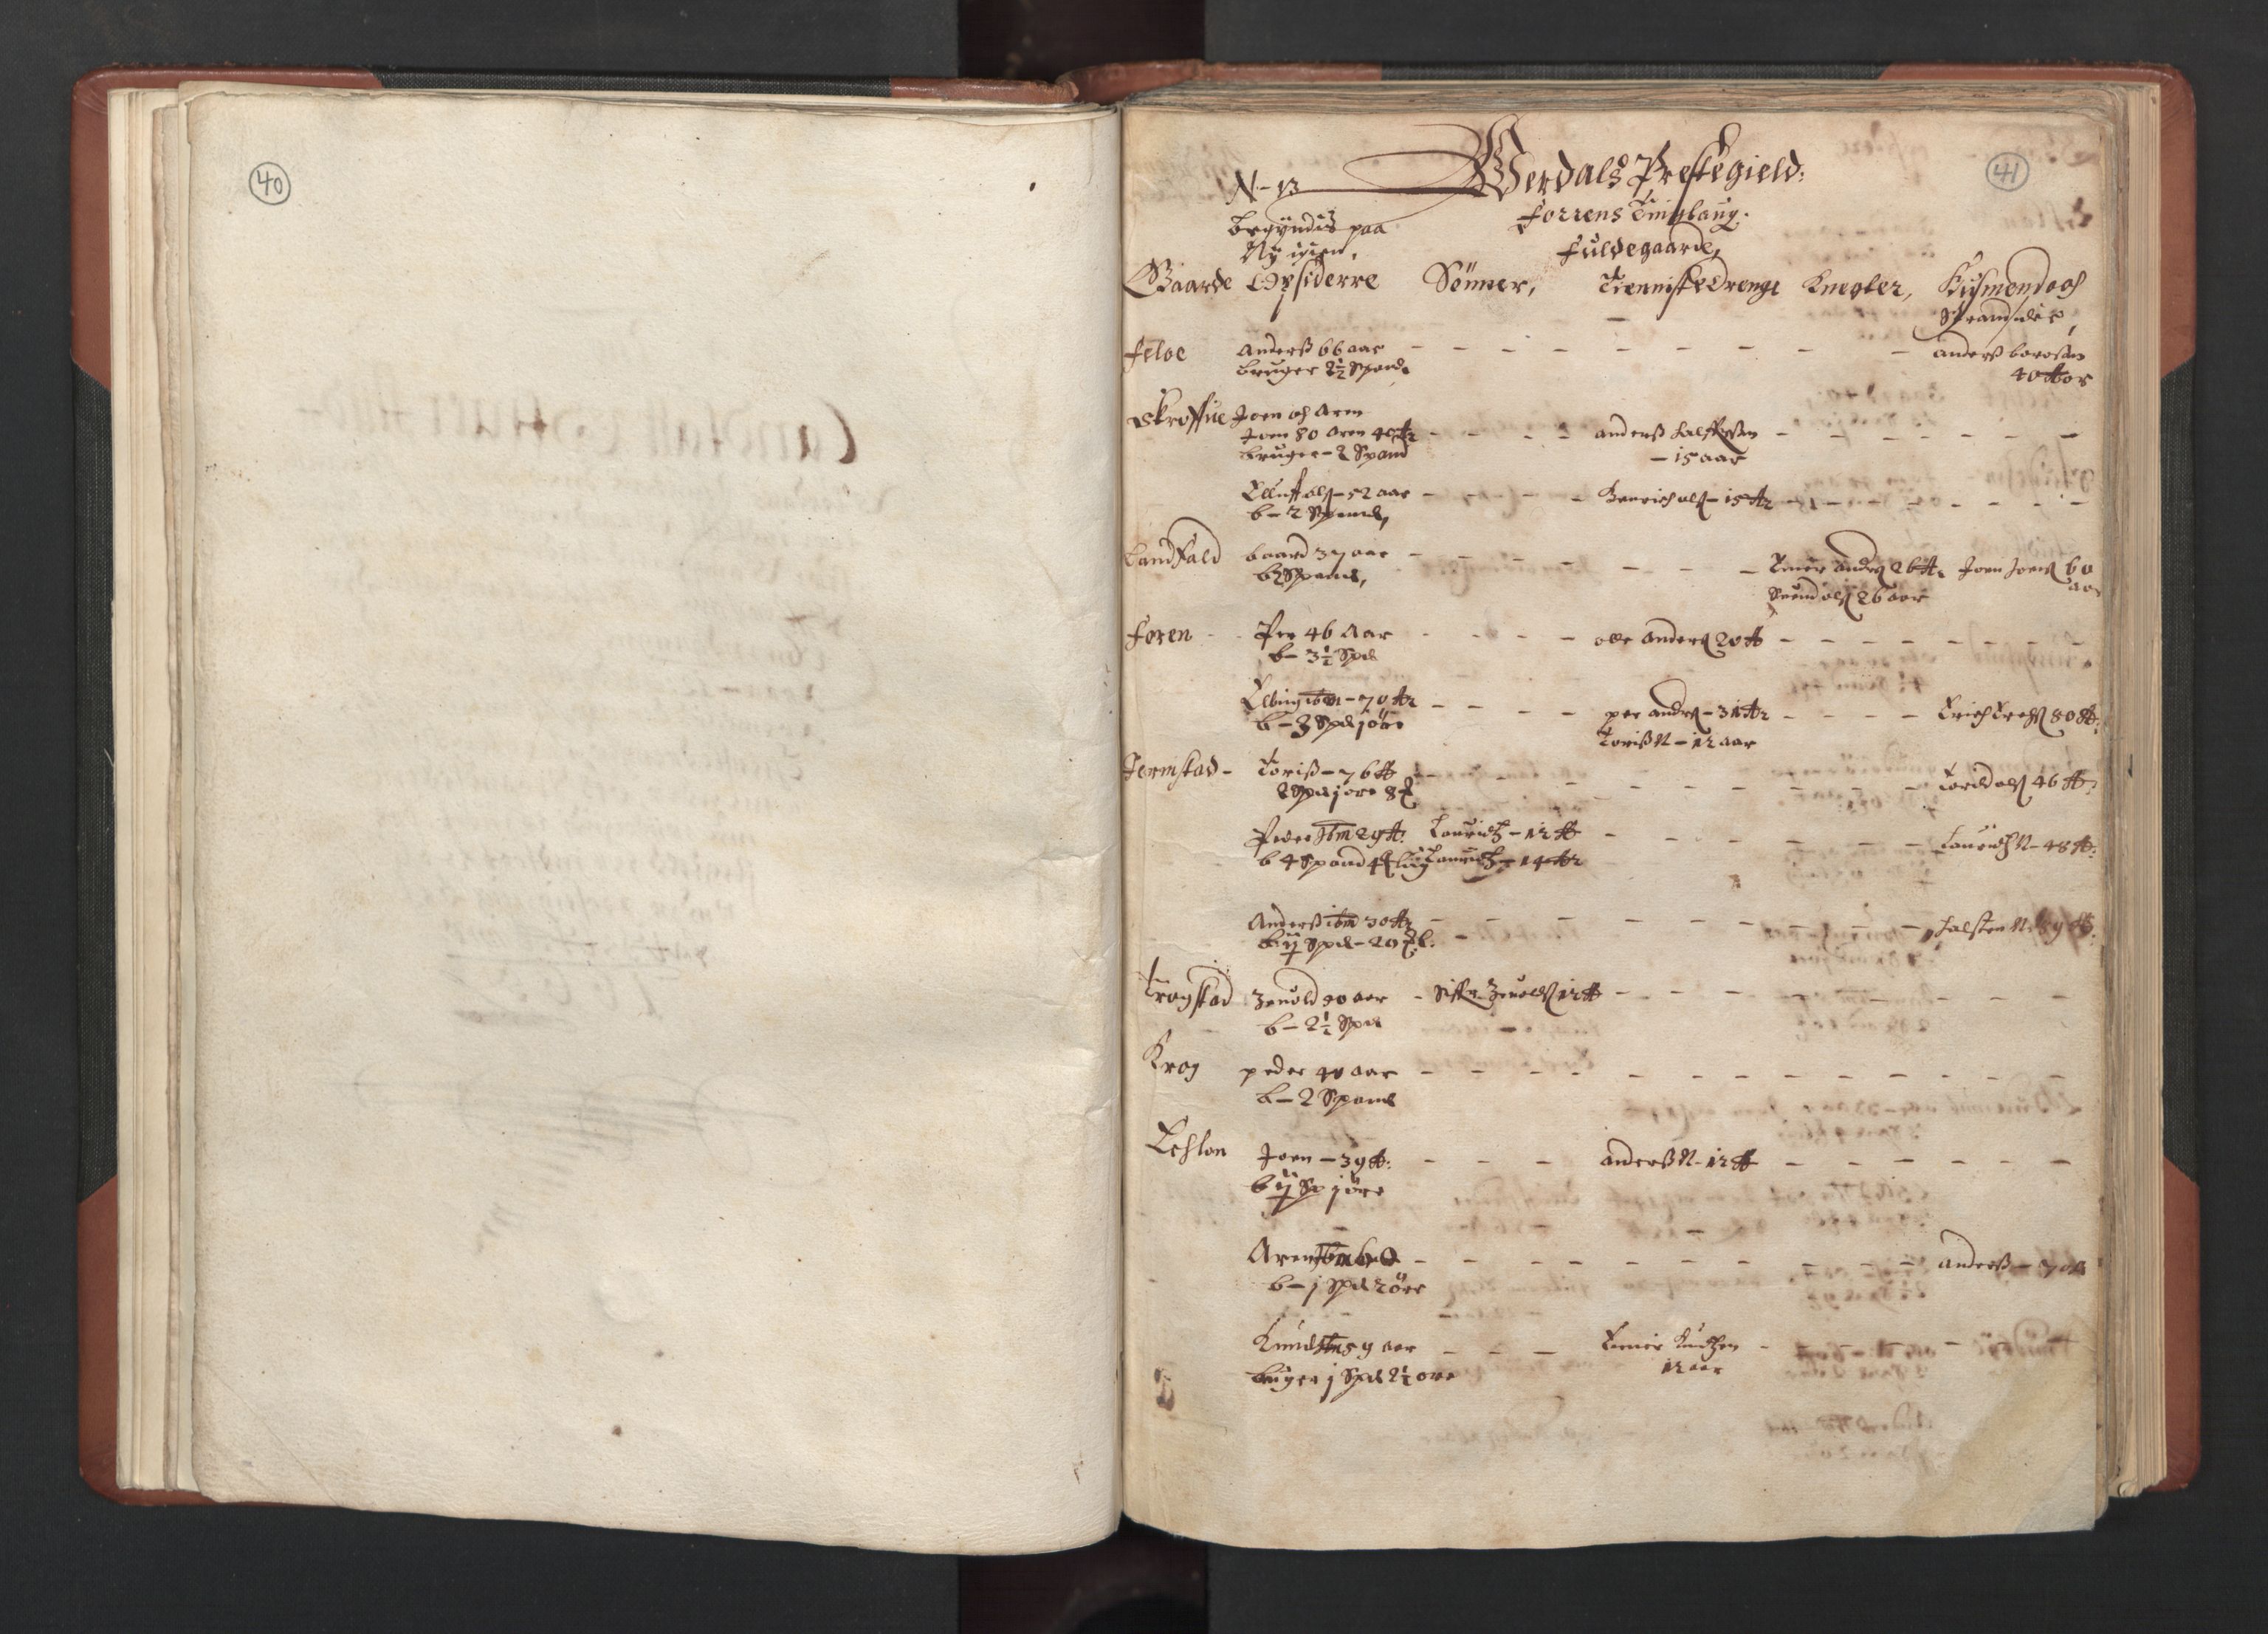 RA, Bailiff's Census 1664-1666, no. 19: Fosen fogderi, Inderøy fogderi, Selbu fogderi, Namdal fogderi and Stjørdal fogderi, 1664-1665, p. 40-41